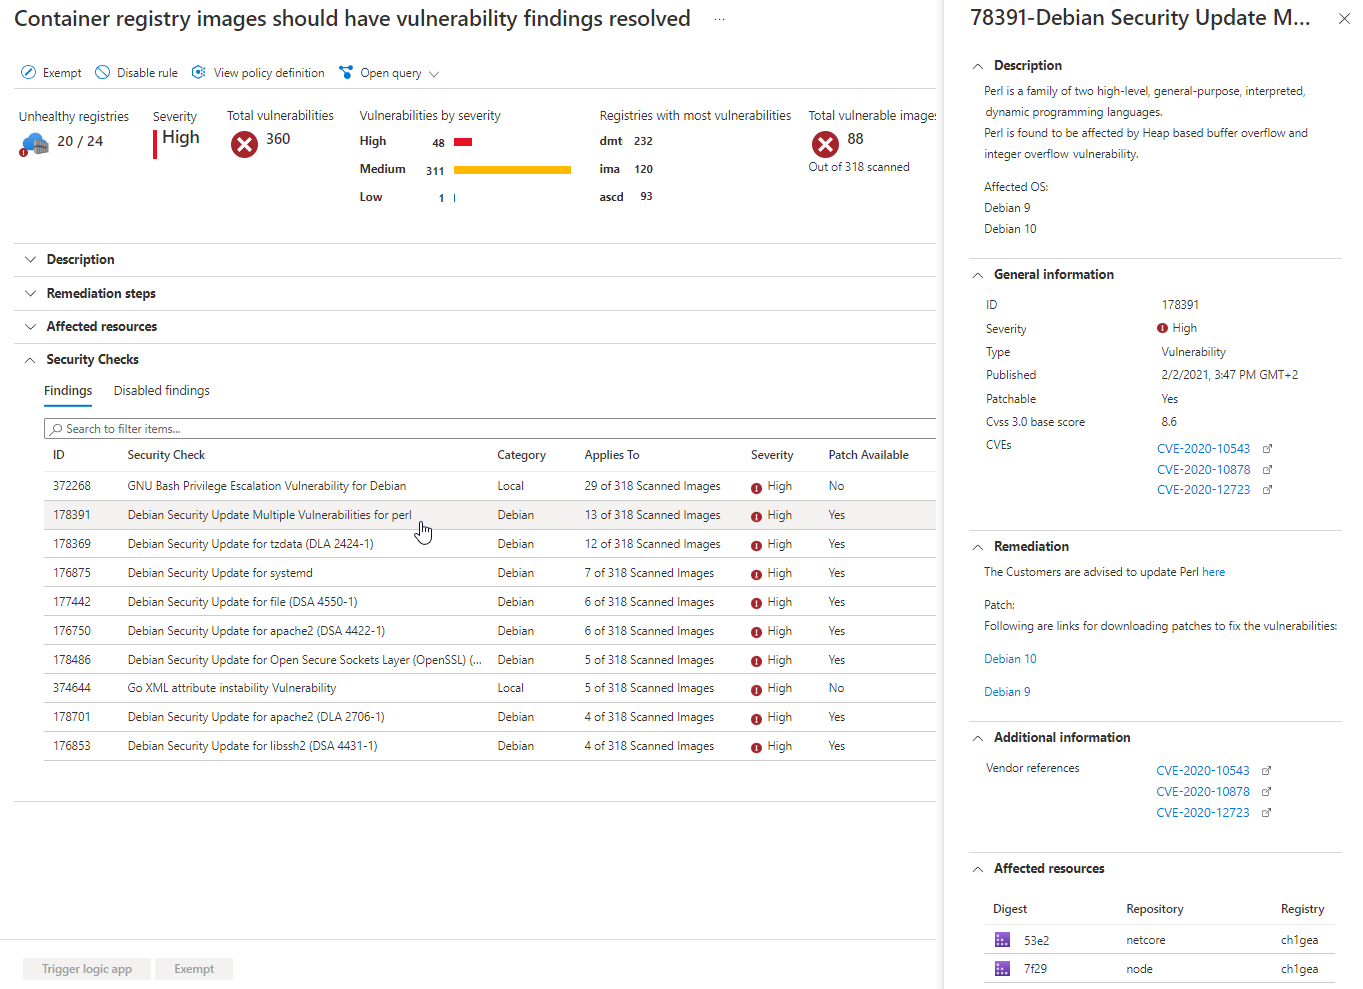 Experimente a recomendação do Microsoft Defender for Cloud sobre vulnerabilidades descobertas em Azure Container Registry (ACR) acolhia imagens.